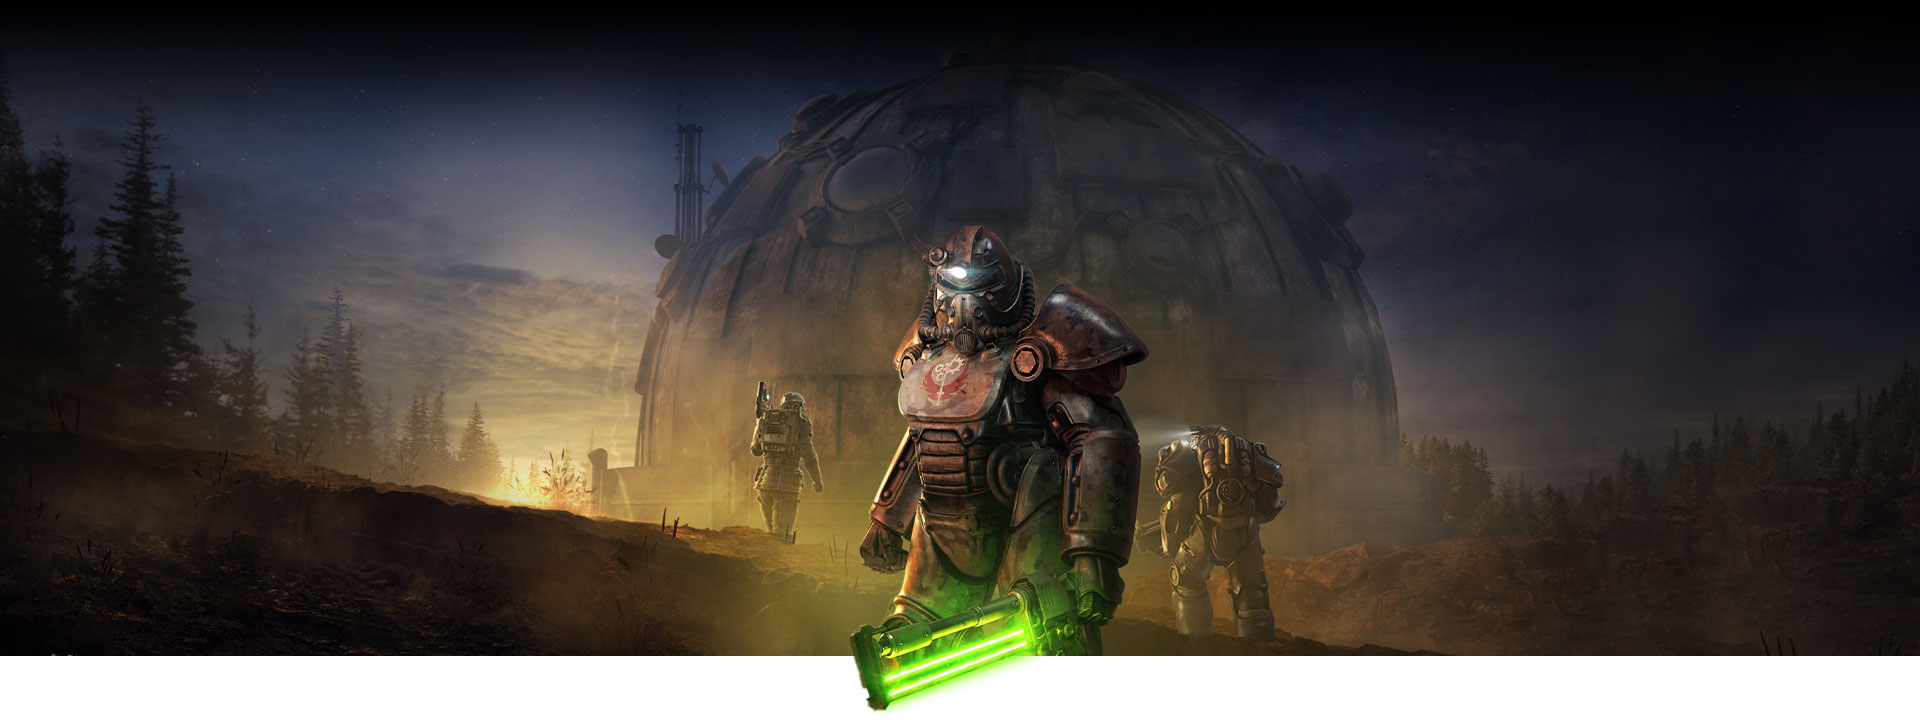 Χαρακτήρας με Power Armor κρατάει ένα όπλο μάχης σώμα με σώμα που λάμπει, μπροστά από ένα μεγάλο θολωτό κτίριο